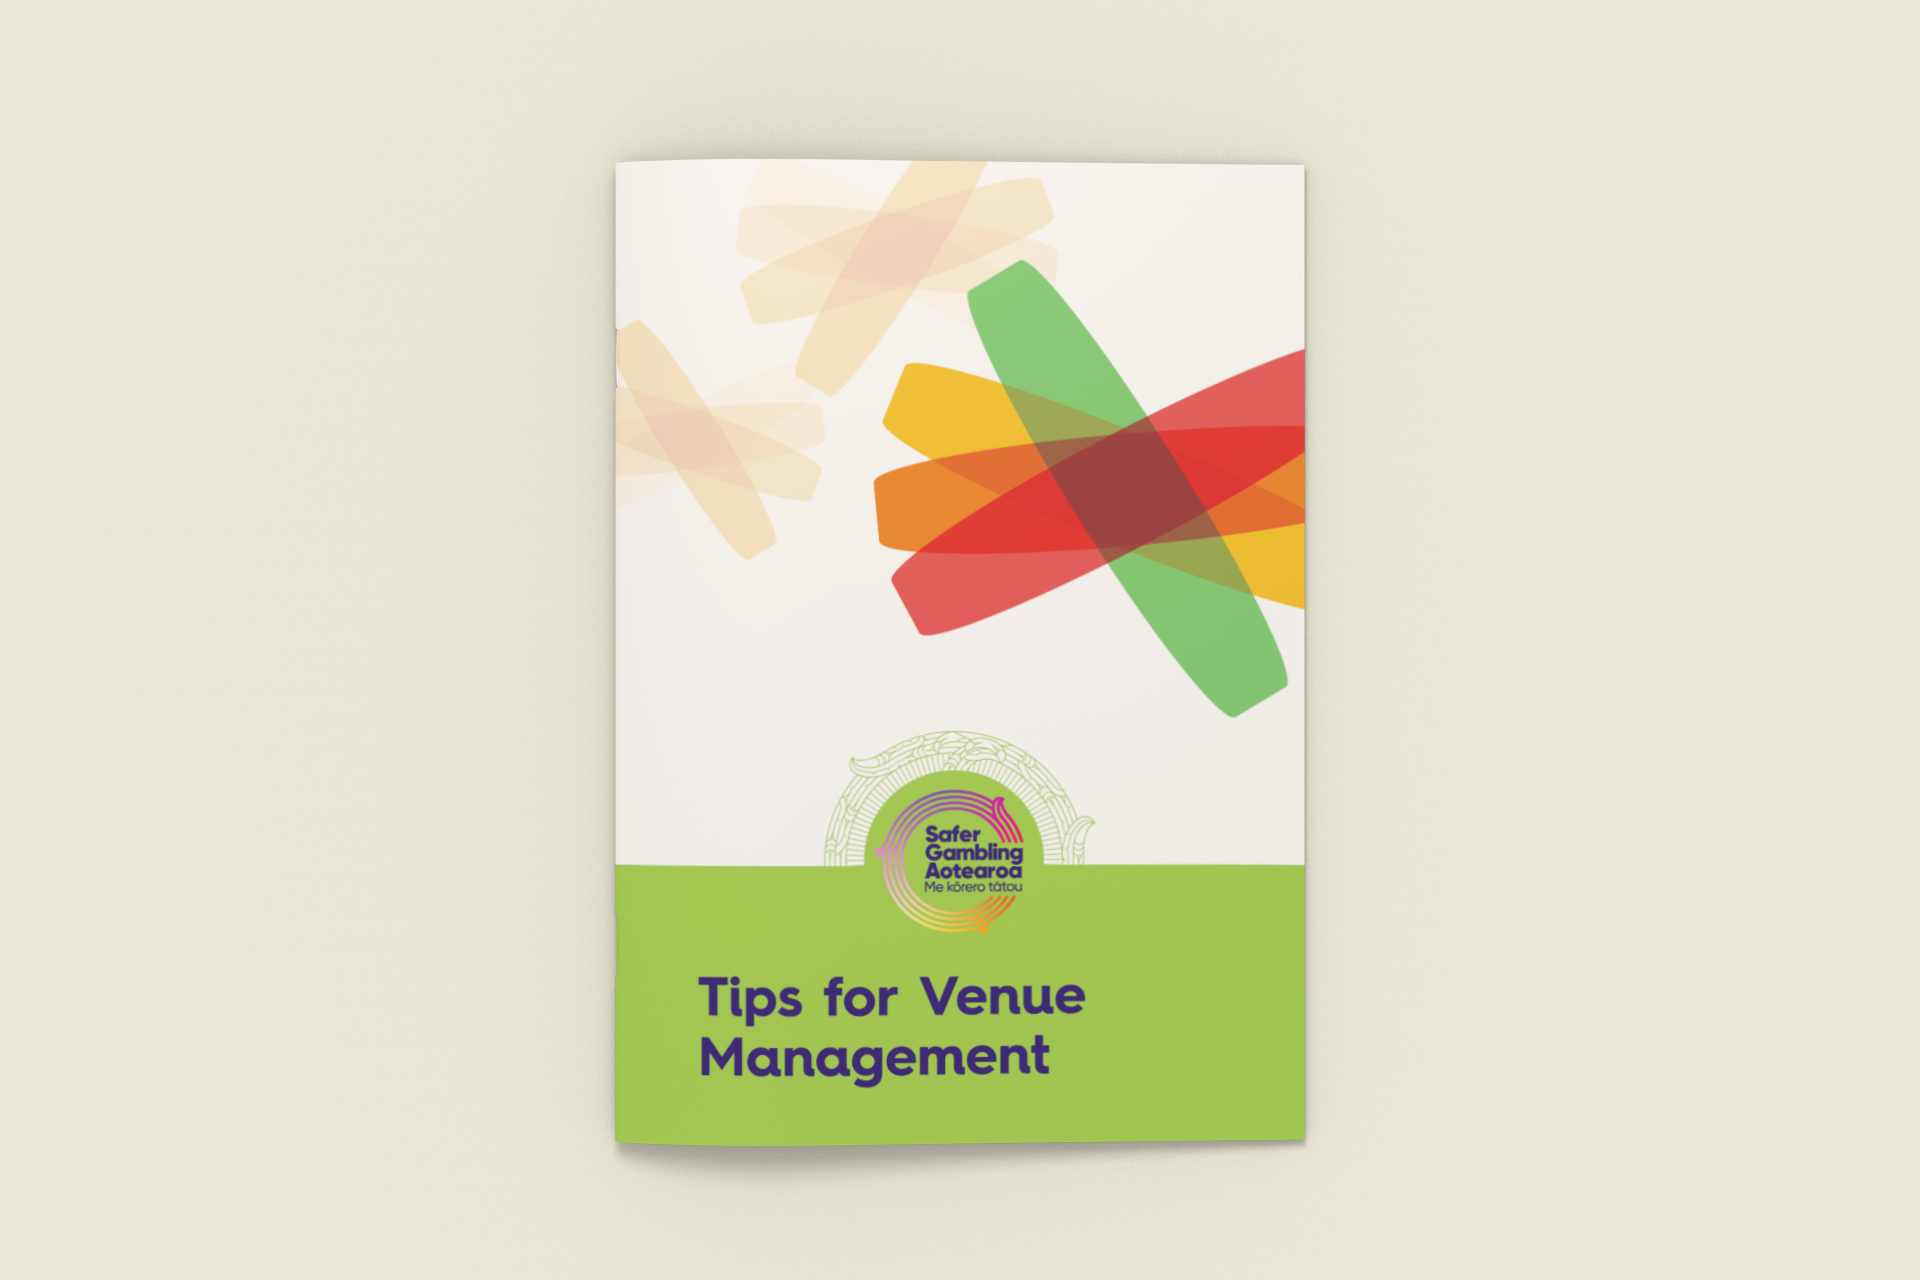 Tips for Venue Management